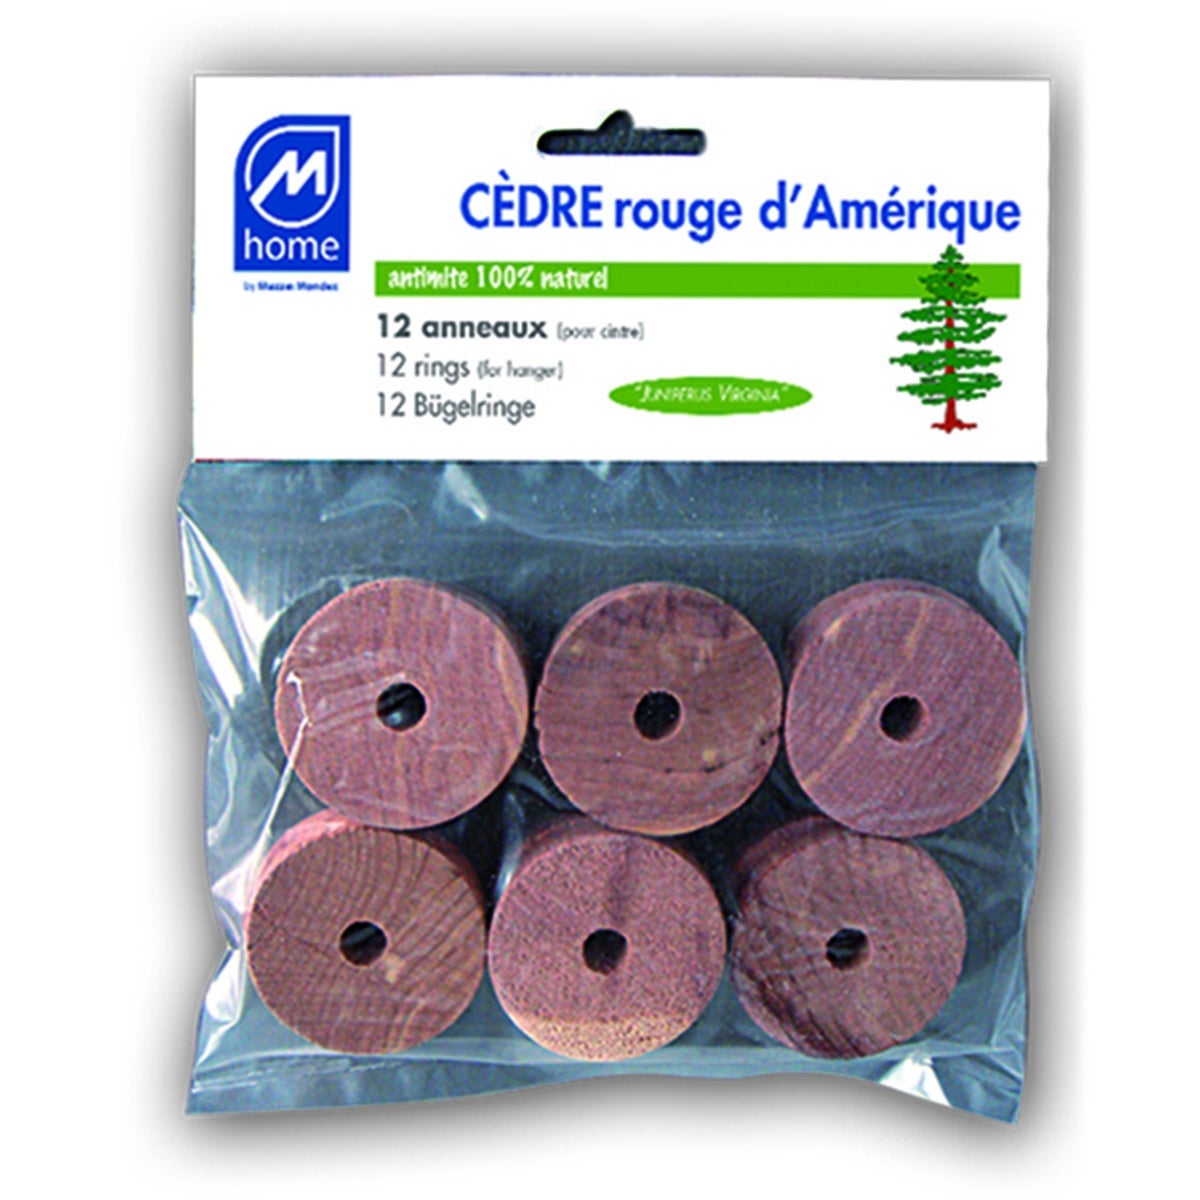 Anneaux en cèdre rouge pour cintres - antimite naturel